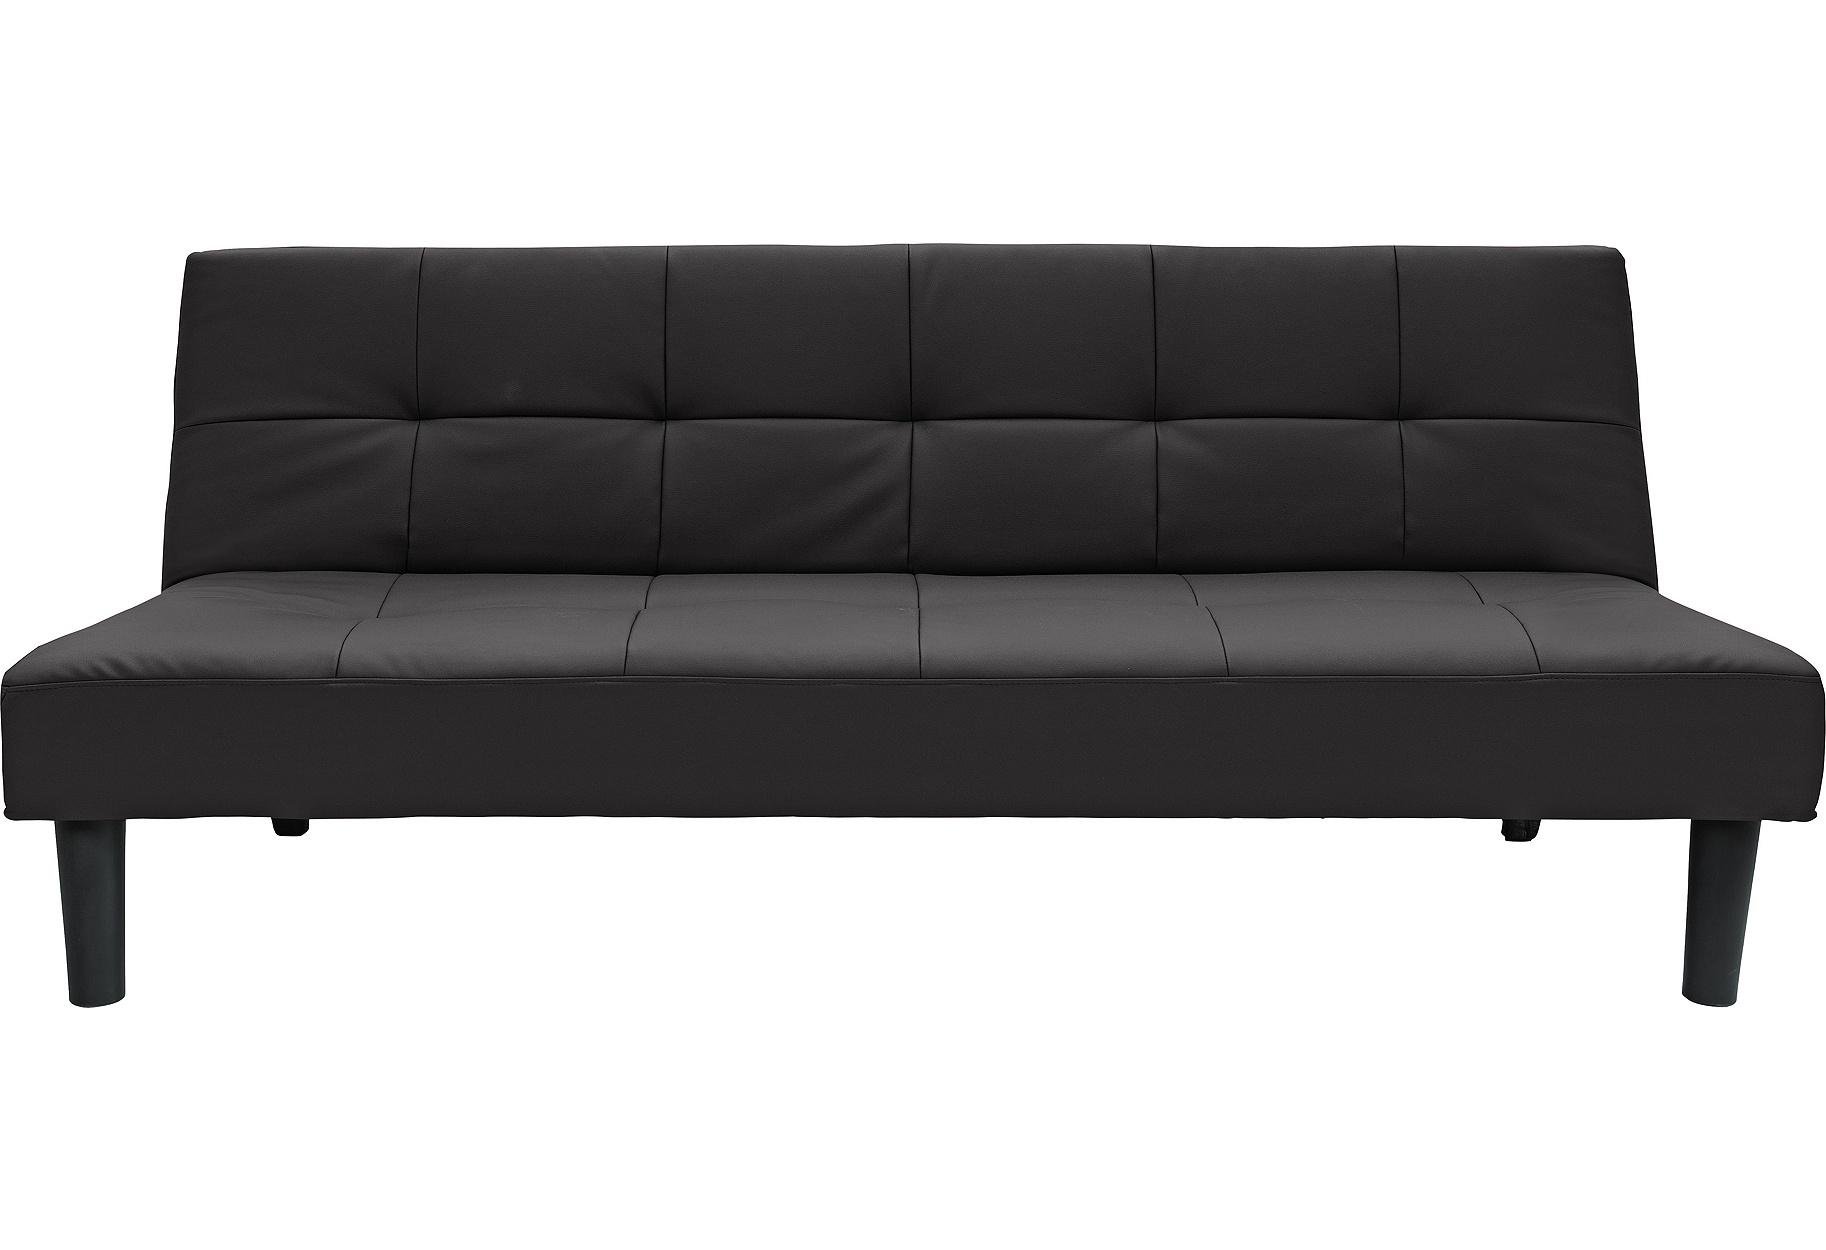 Buy Argos Home Patsy 2 Seater Clic Clac Sofa Bed - Black | Sofa